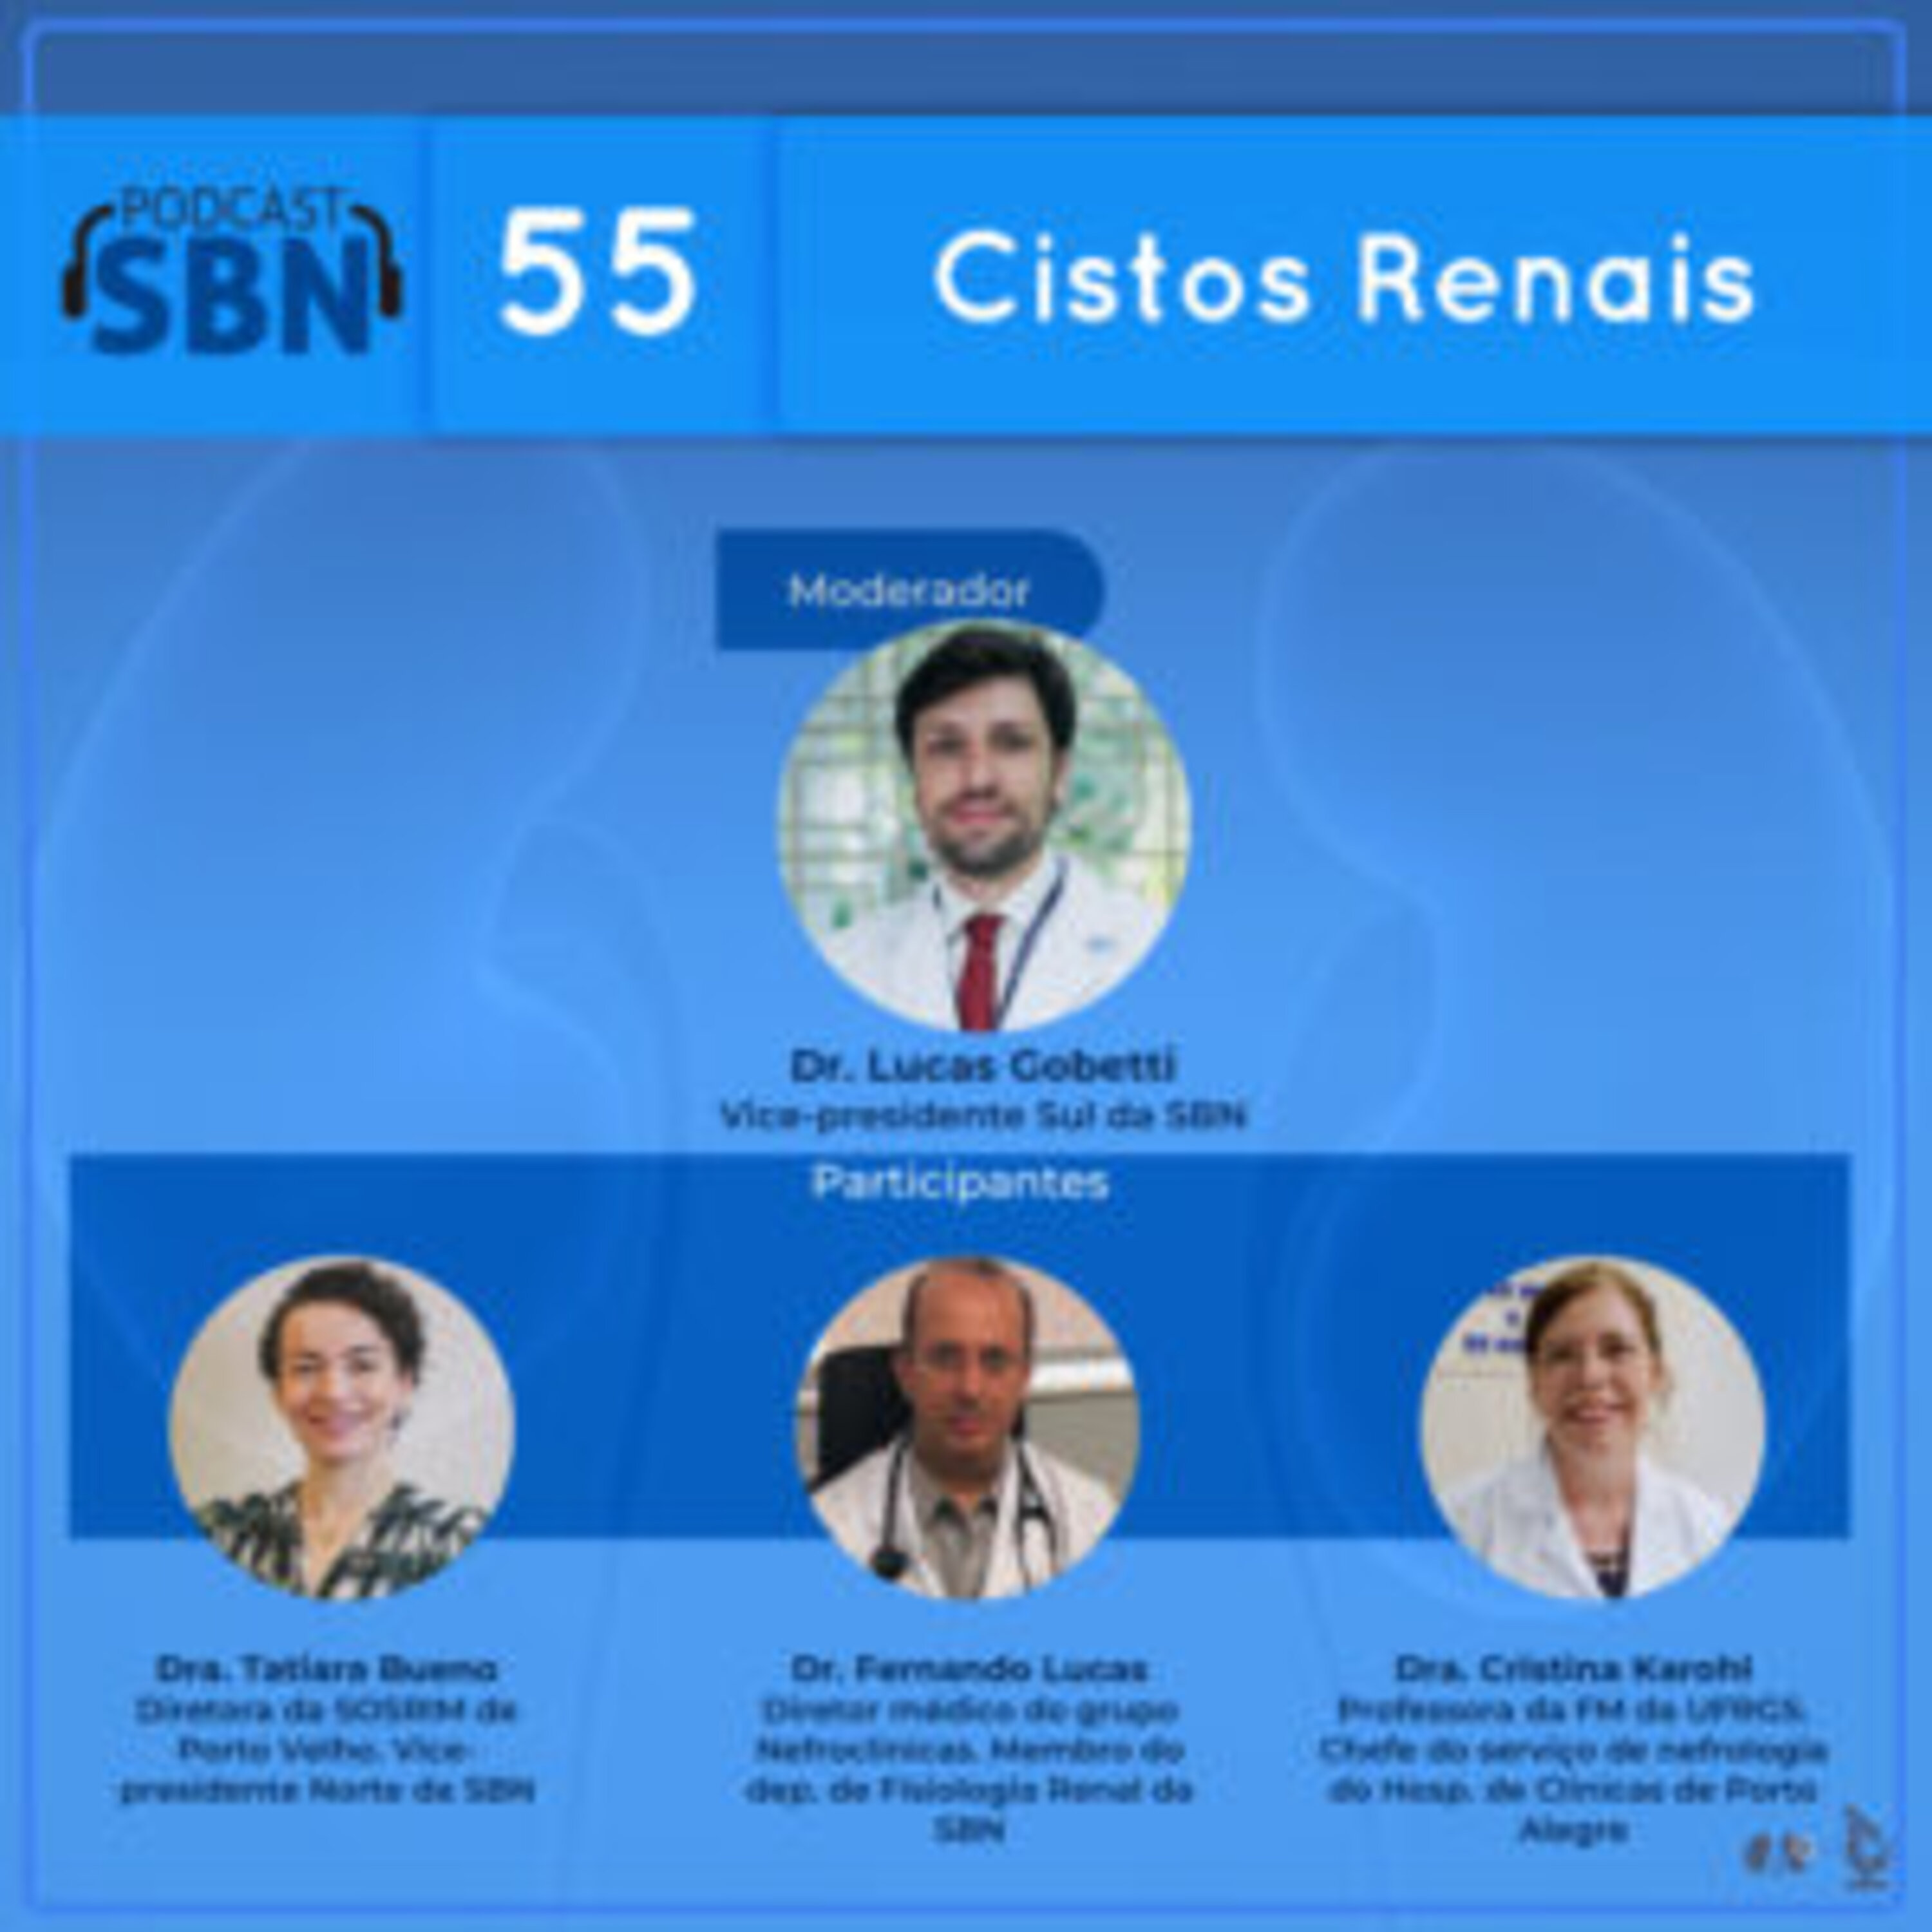 Cistos Renais (SBN #55)